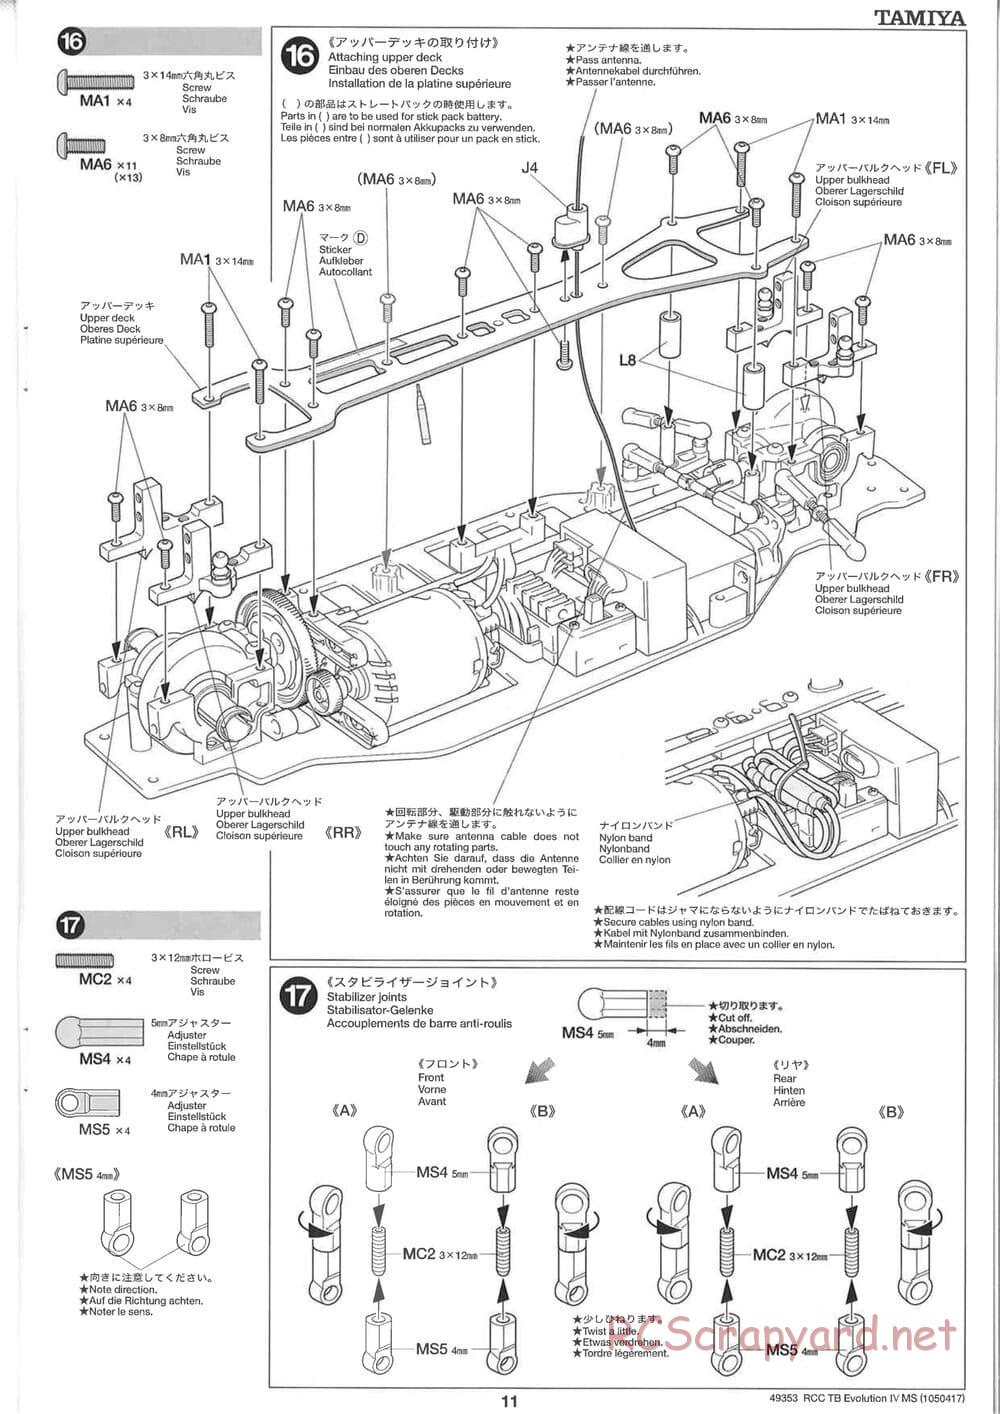 Tamiya - TB Evolution IV MS Chassis - Manual - Page 11